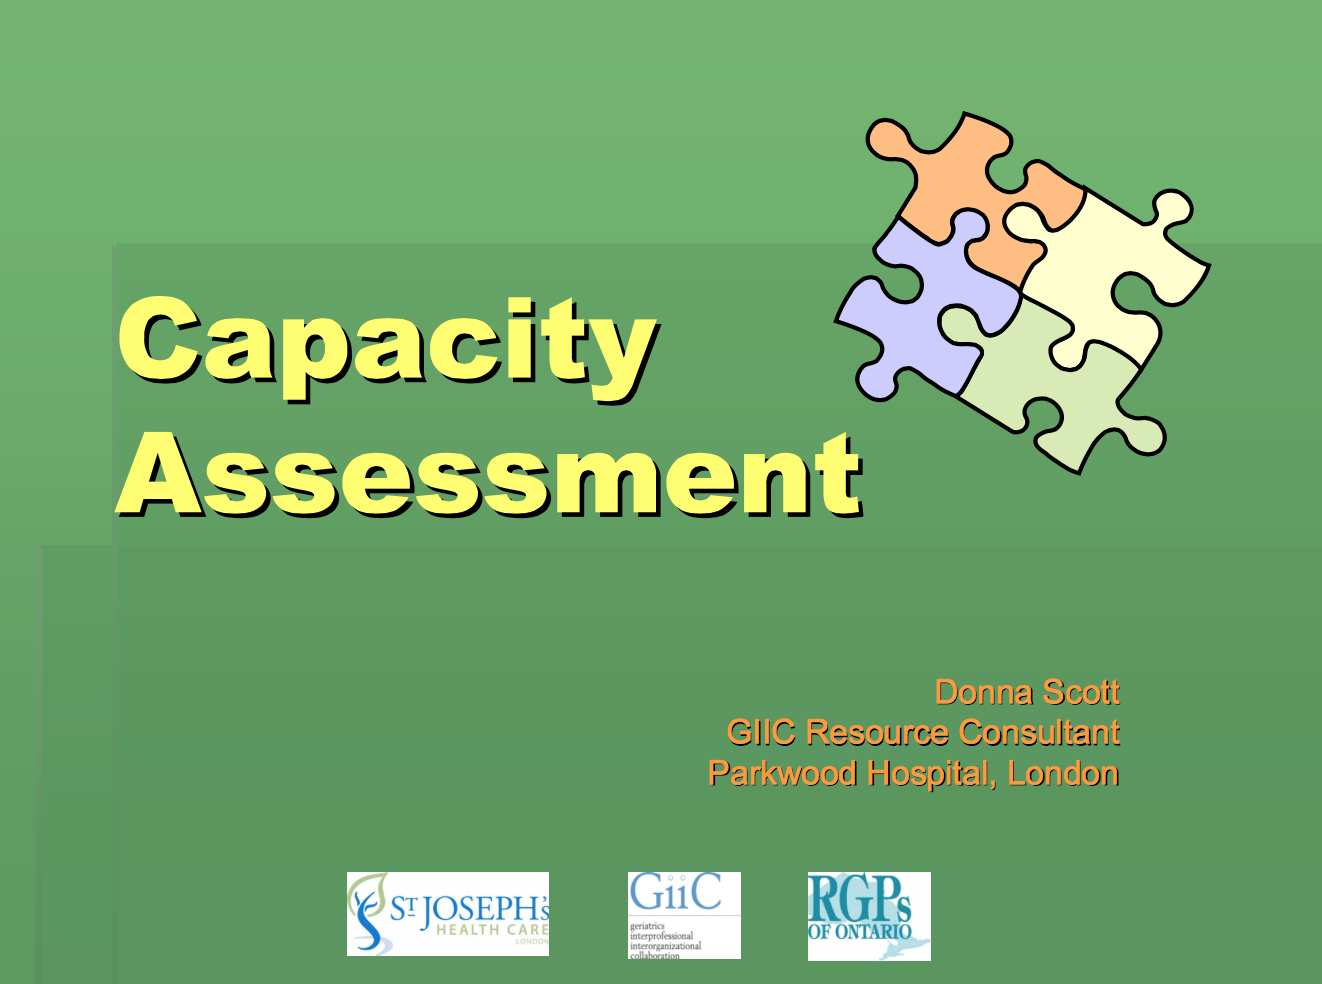 10 Teaching Slides on Capacity Assessment